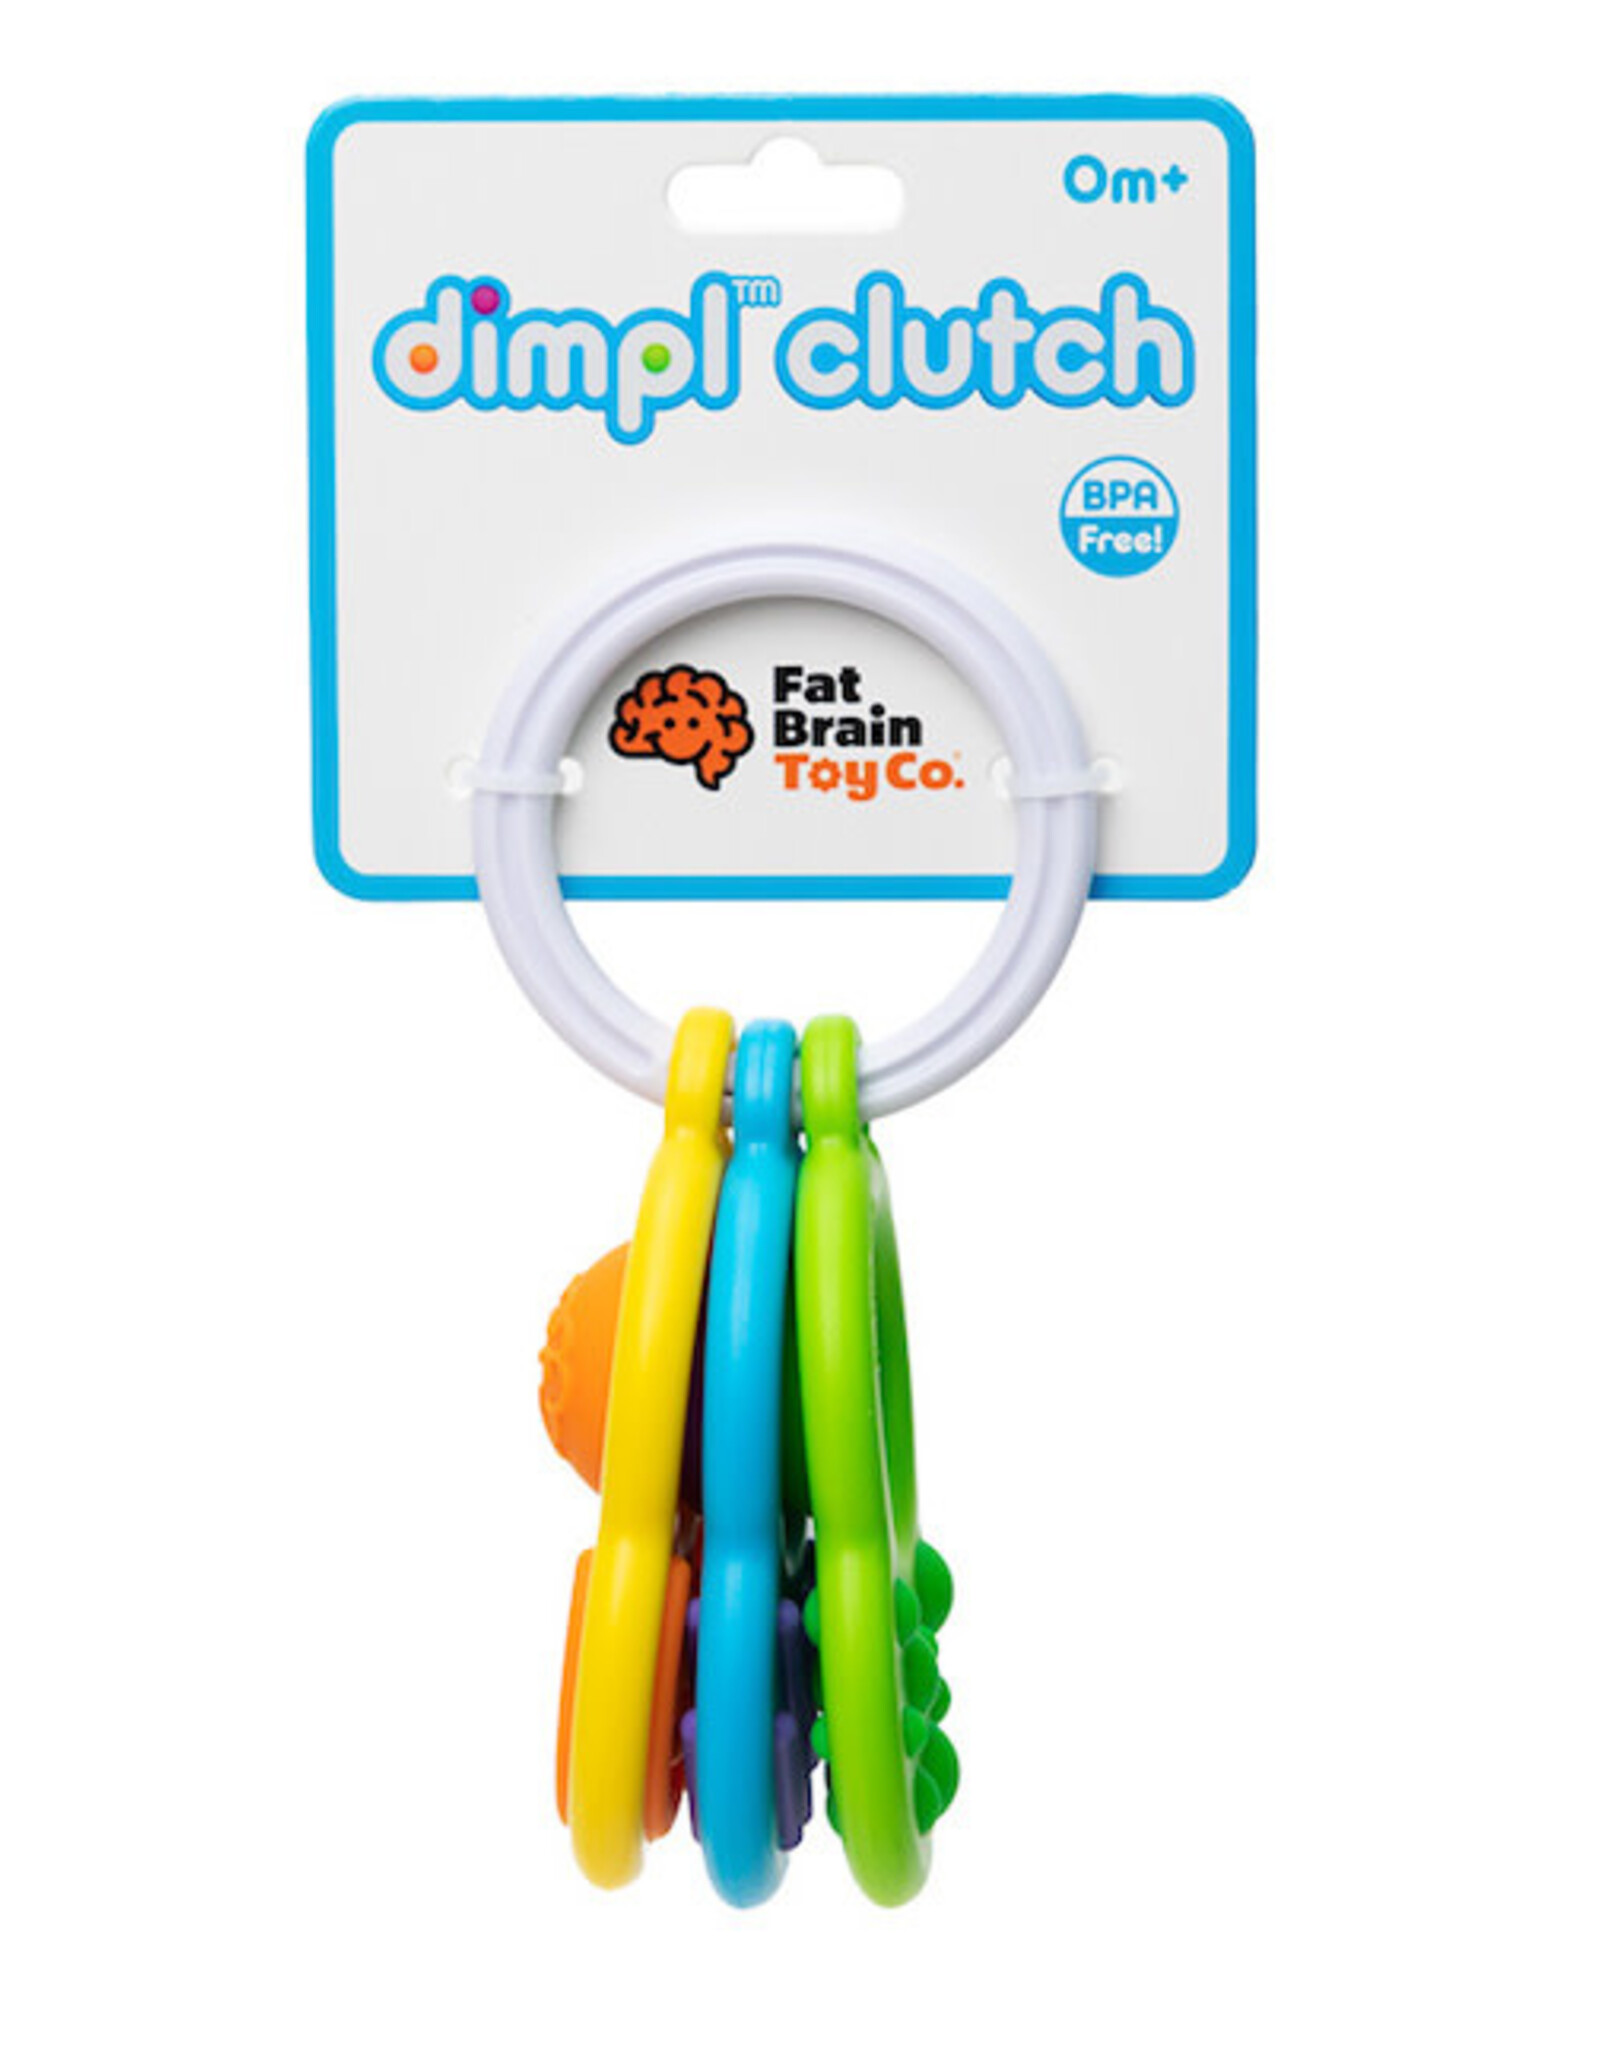 Fat Brain Toy Co. dimpl clutch